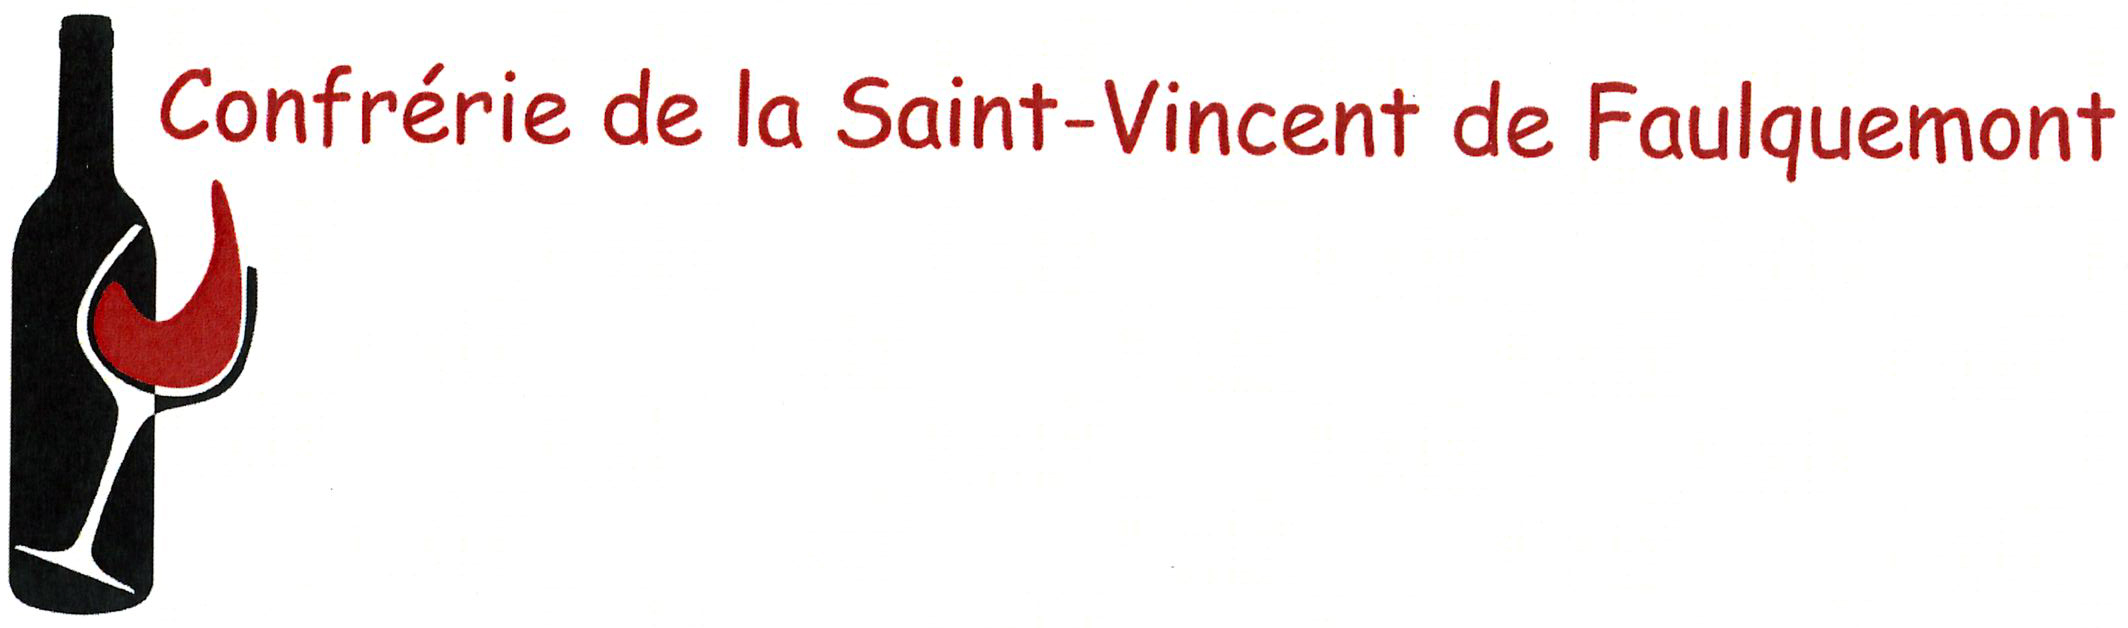 Conférie St Vincent.jpg